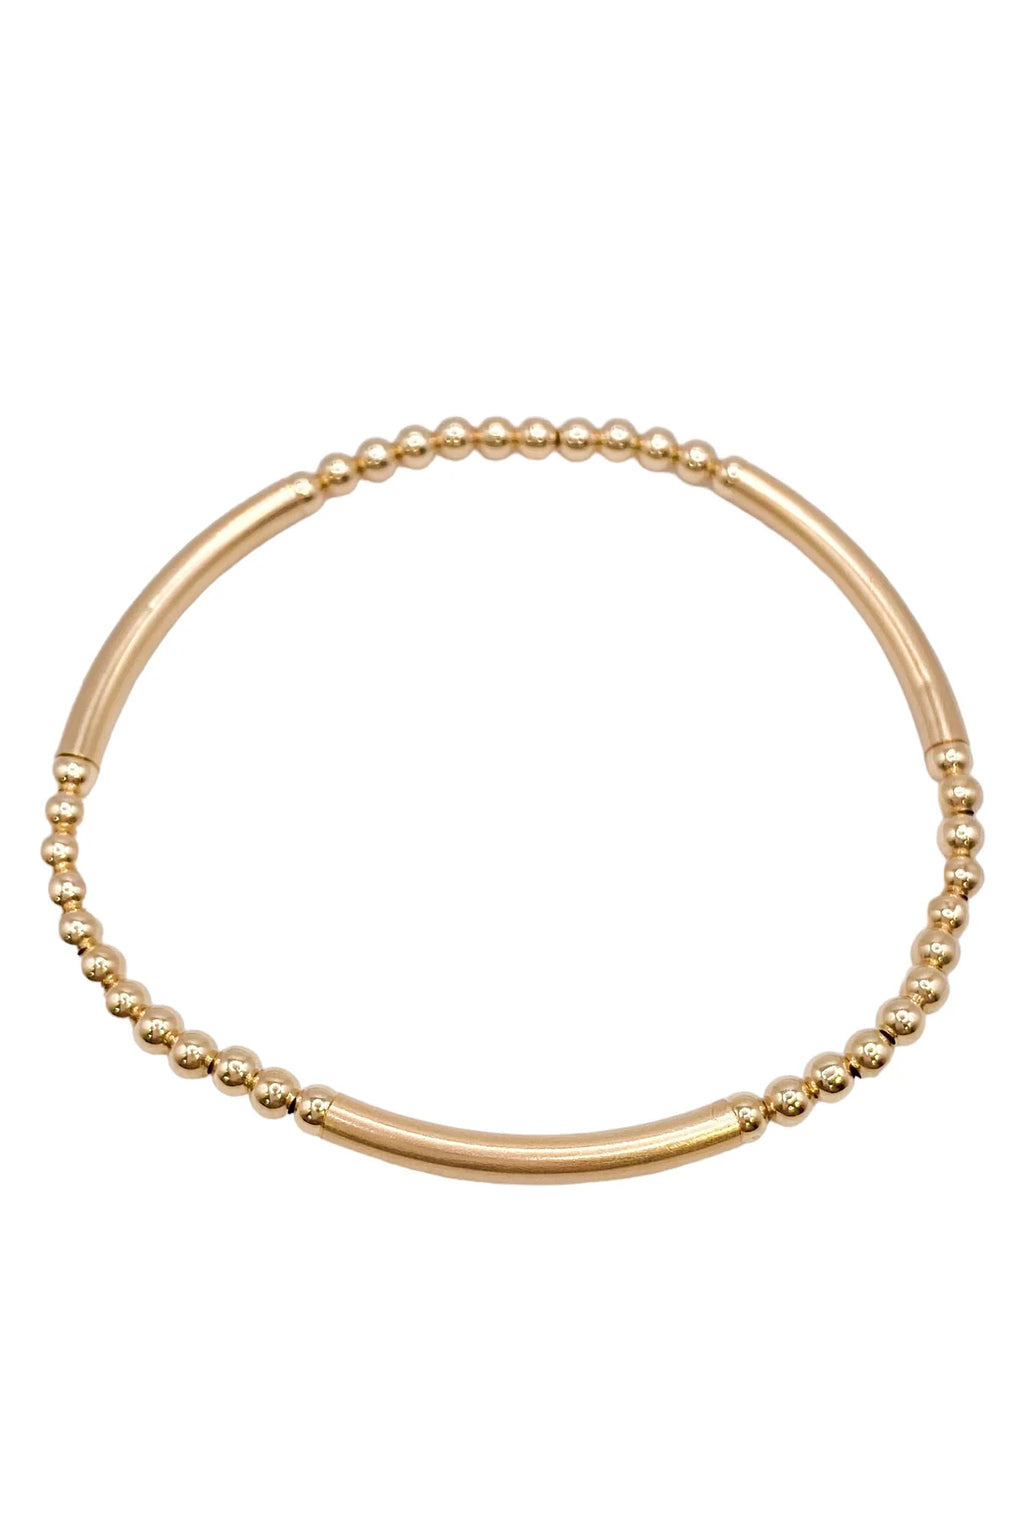 Bliss Bar Pattern Bead Bracelet - Gold